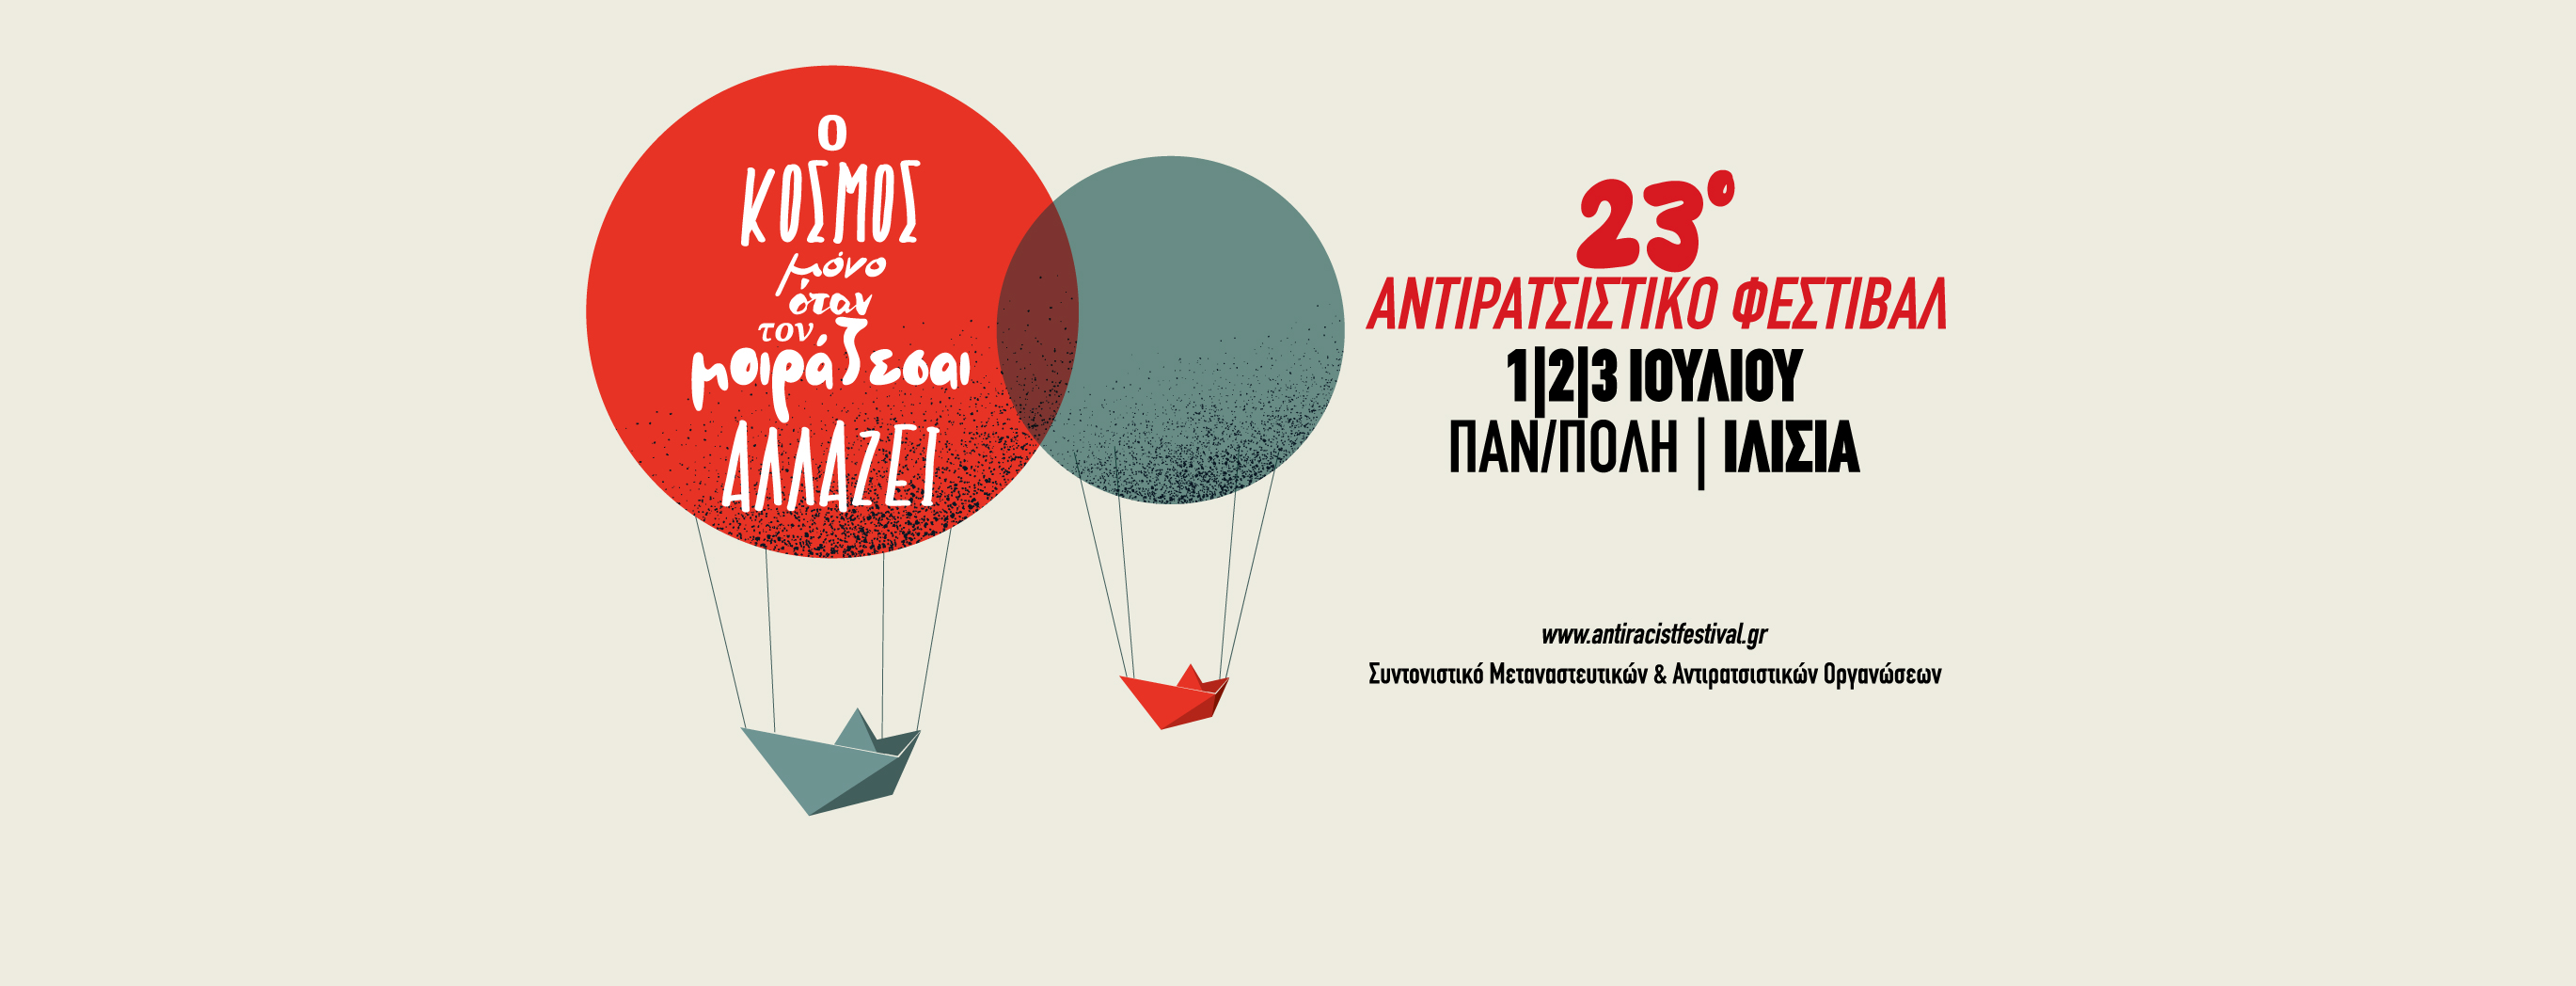 Αντιρατσιστικό Φεστιβάλ Αθήνας